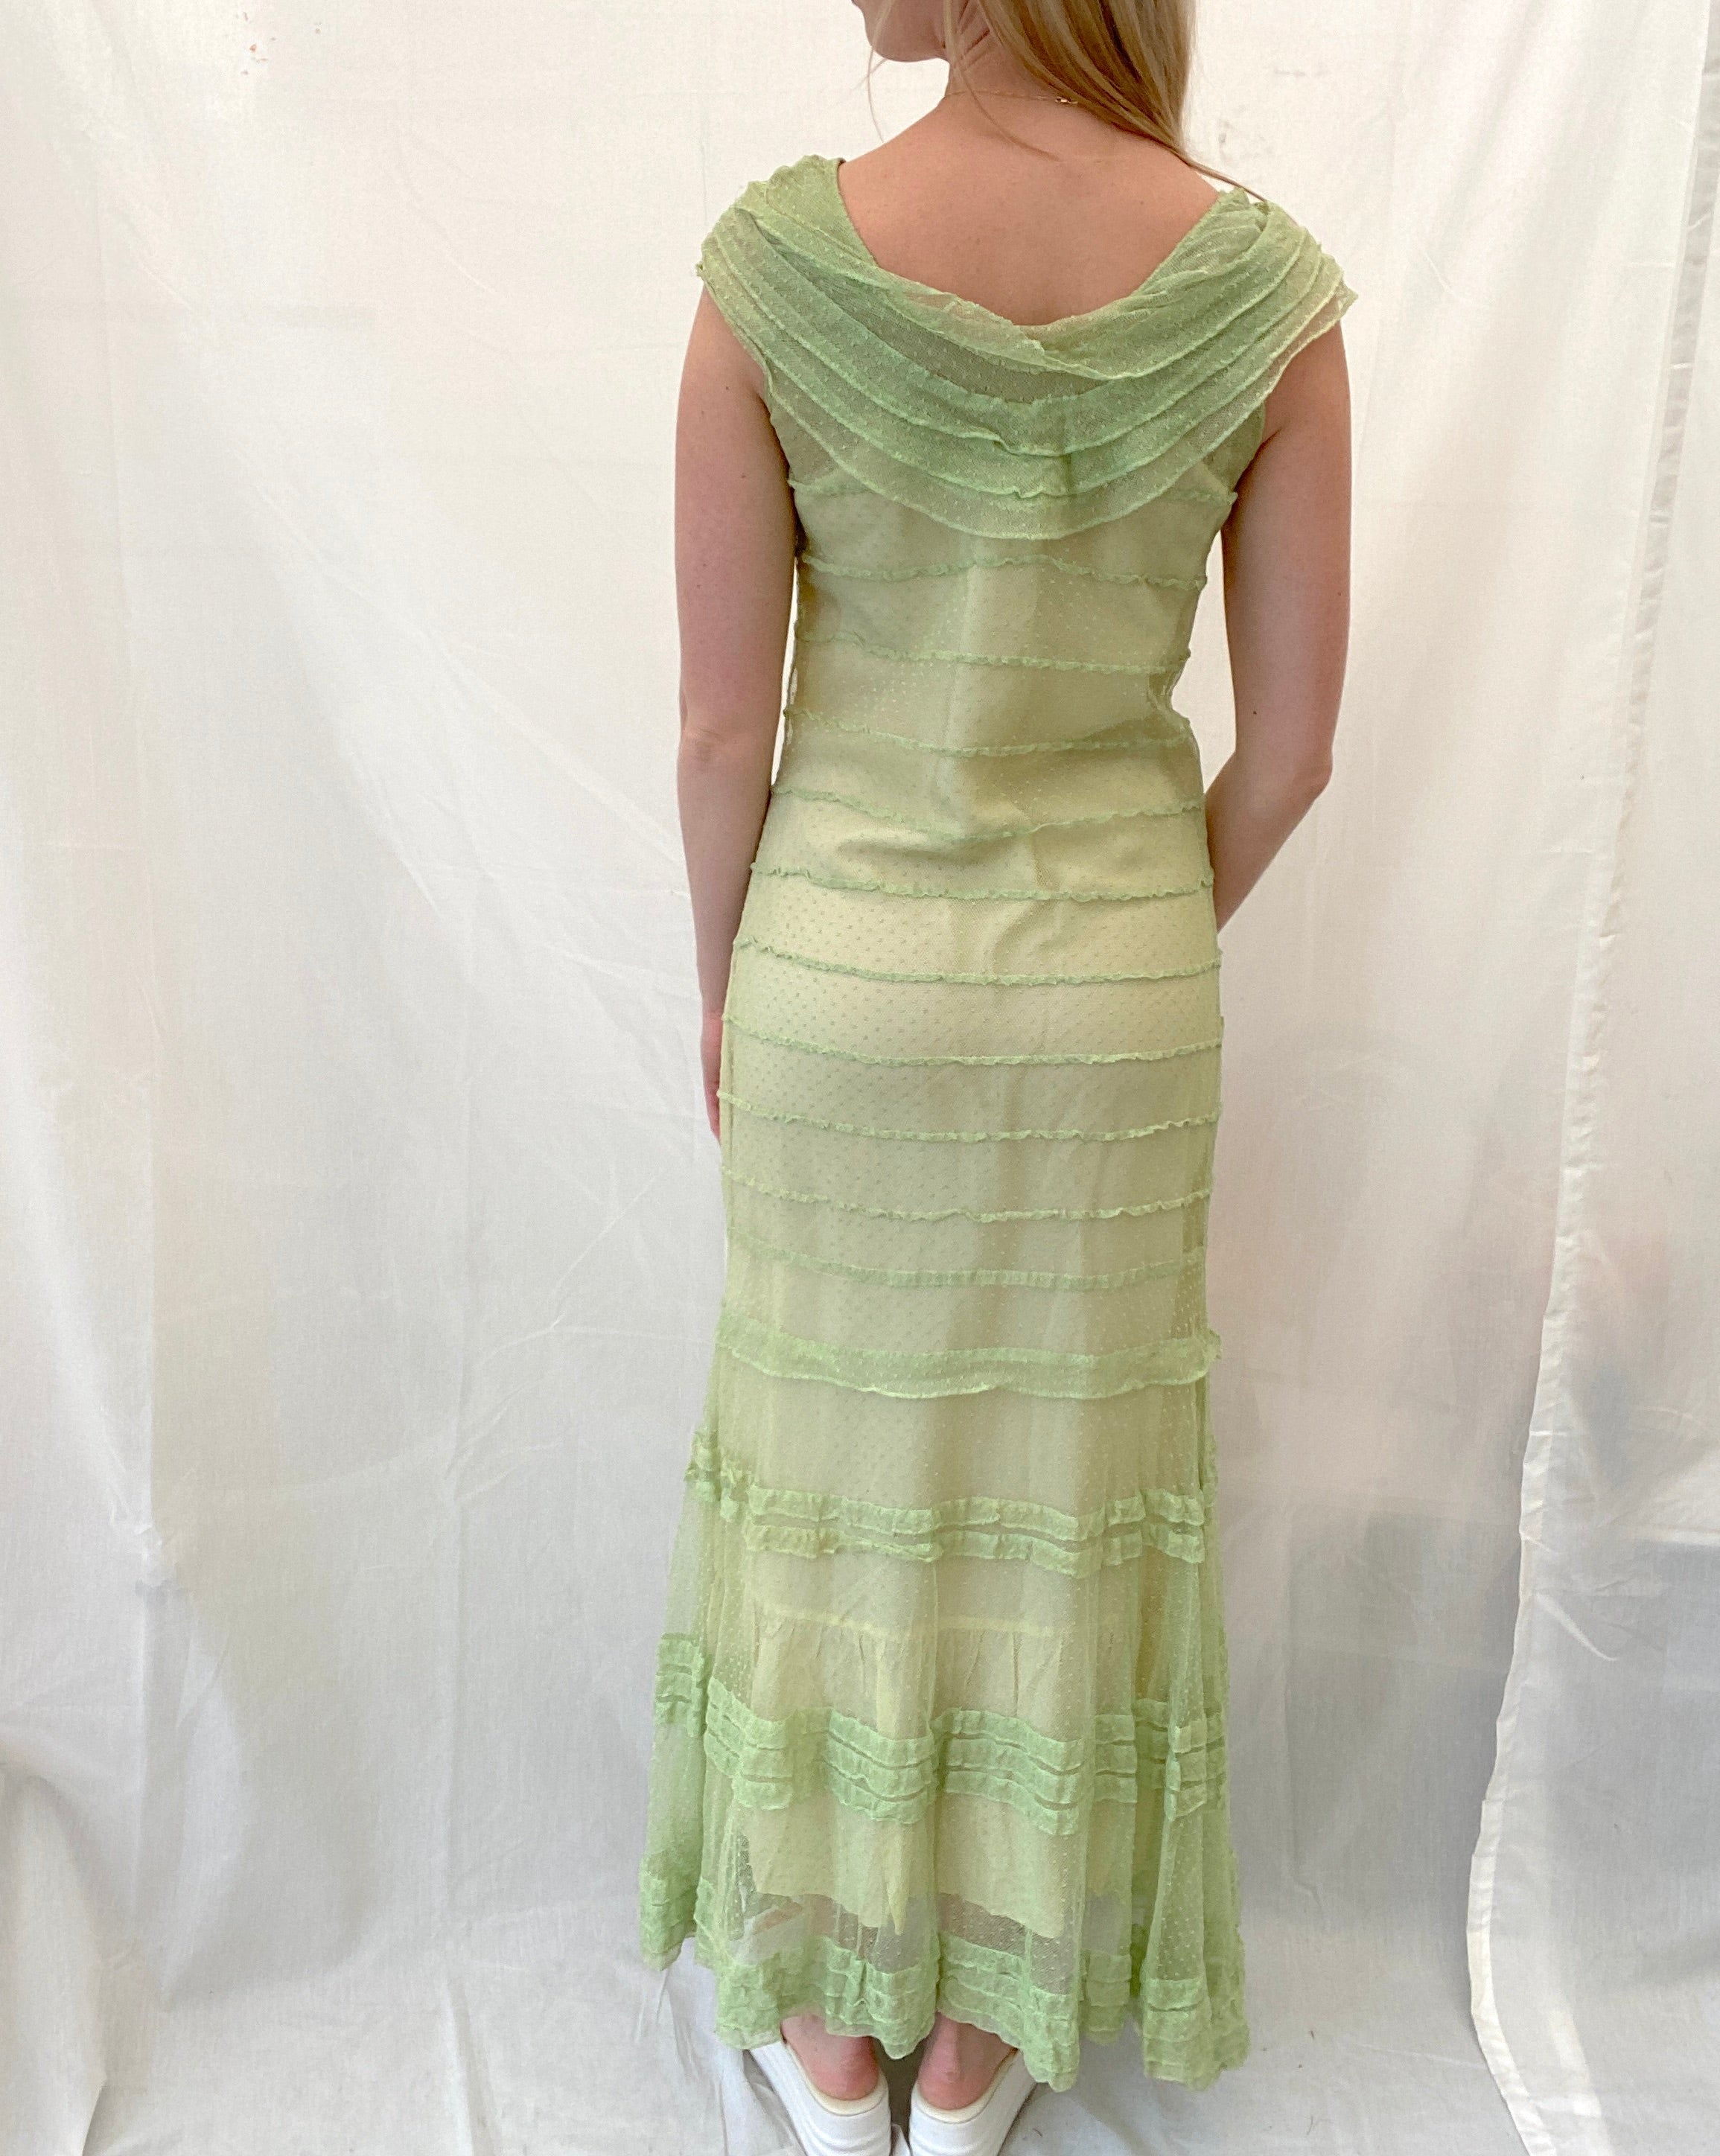 Green Swiss Dot Net Dress